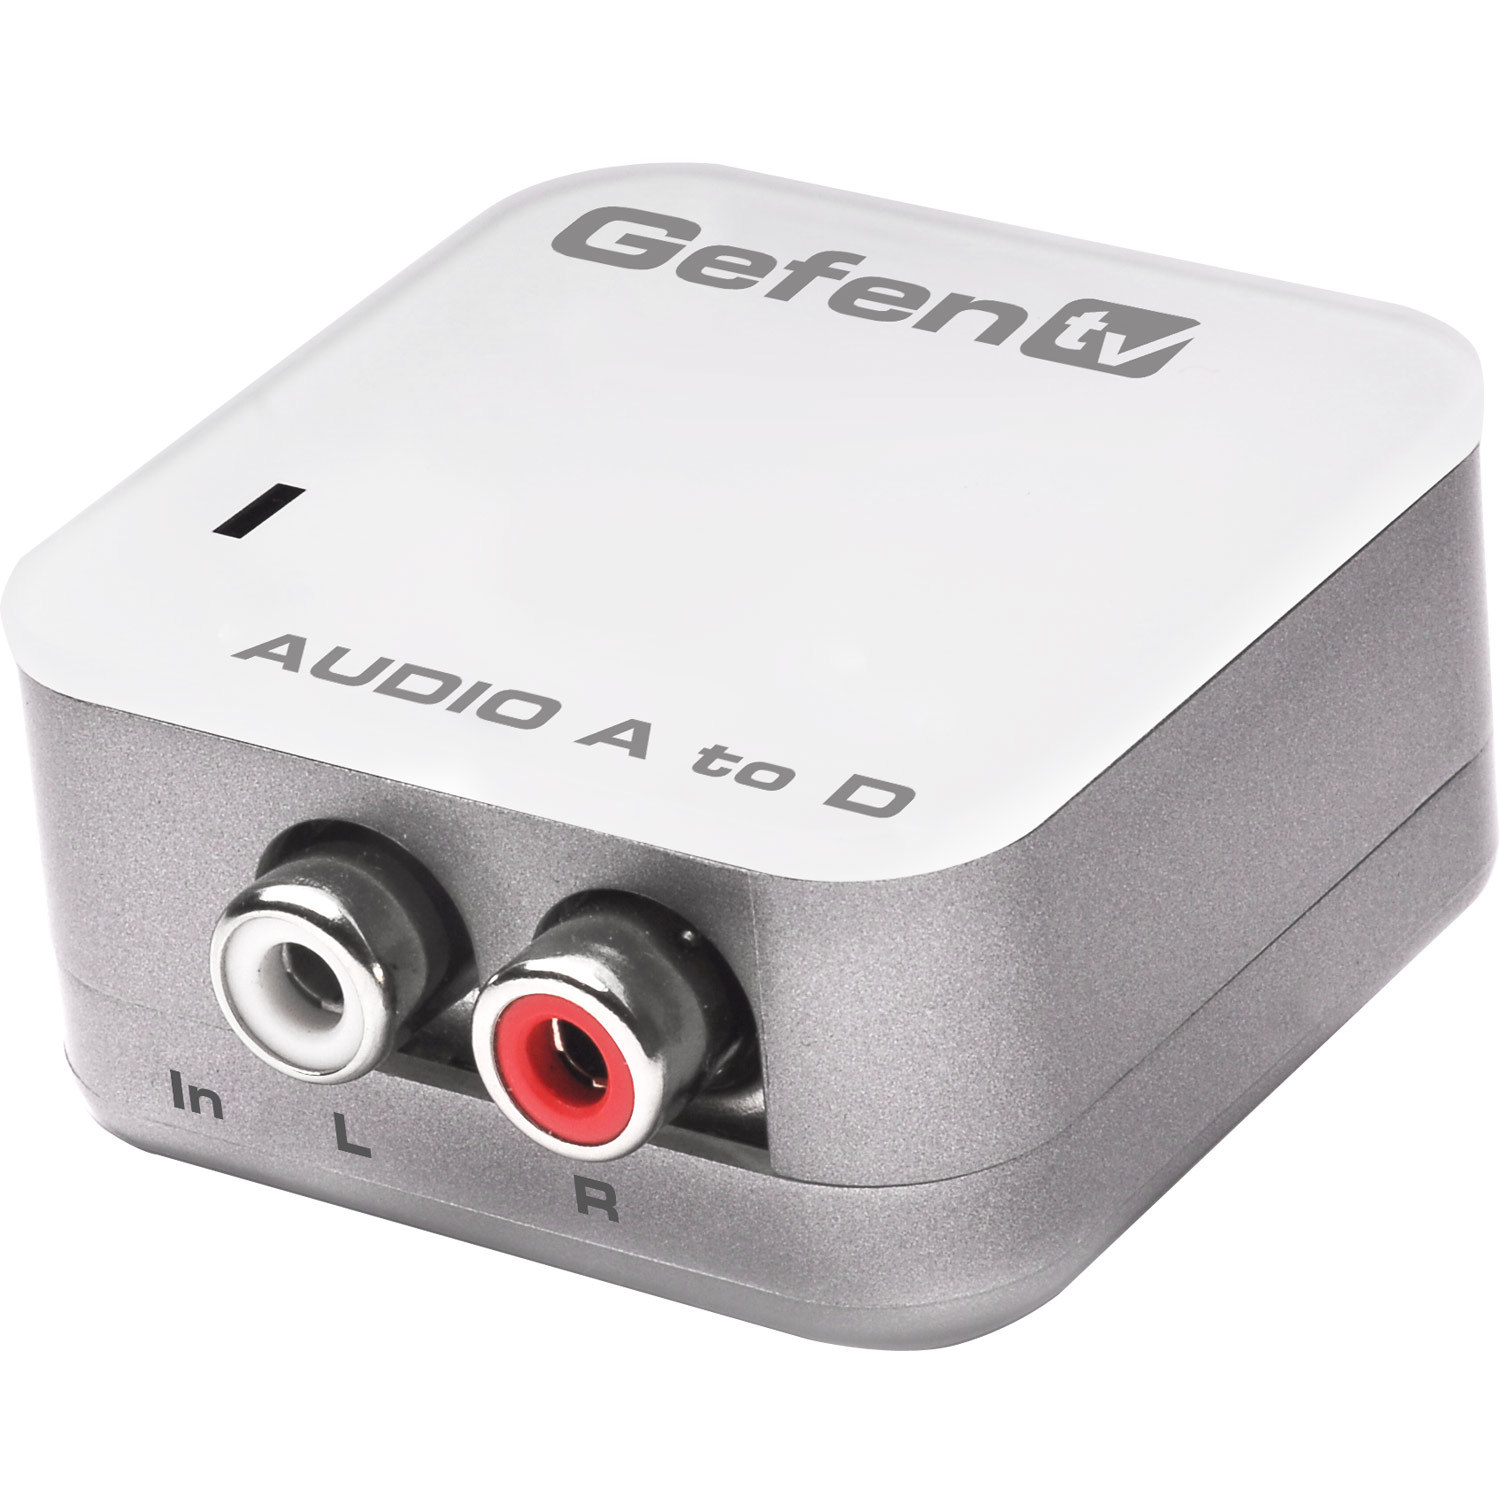 Analog To Digital Audio Adapter Gefen